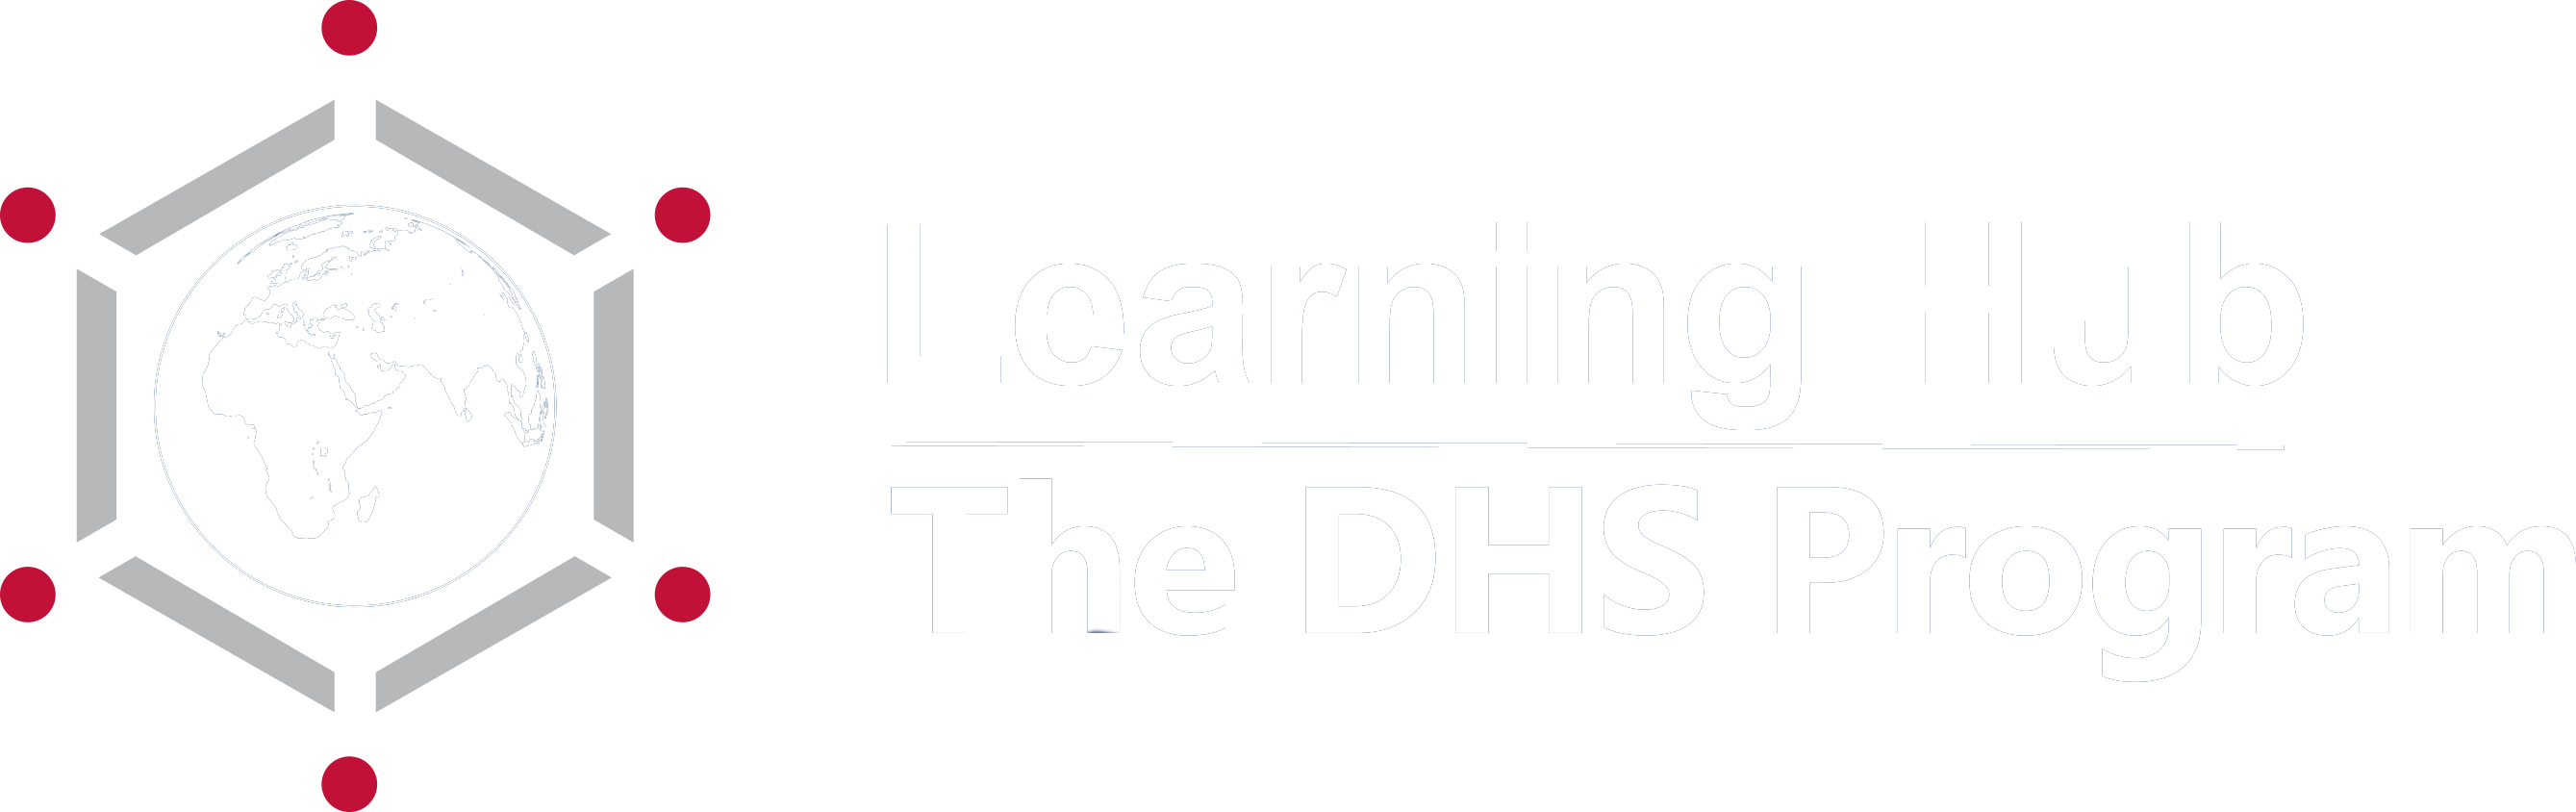 The DHS Program Online Learning Platform